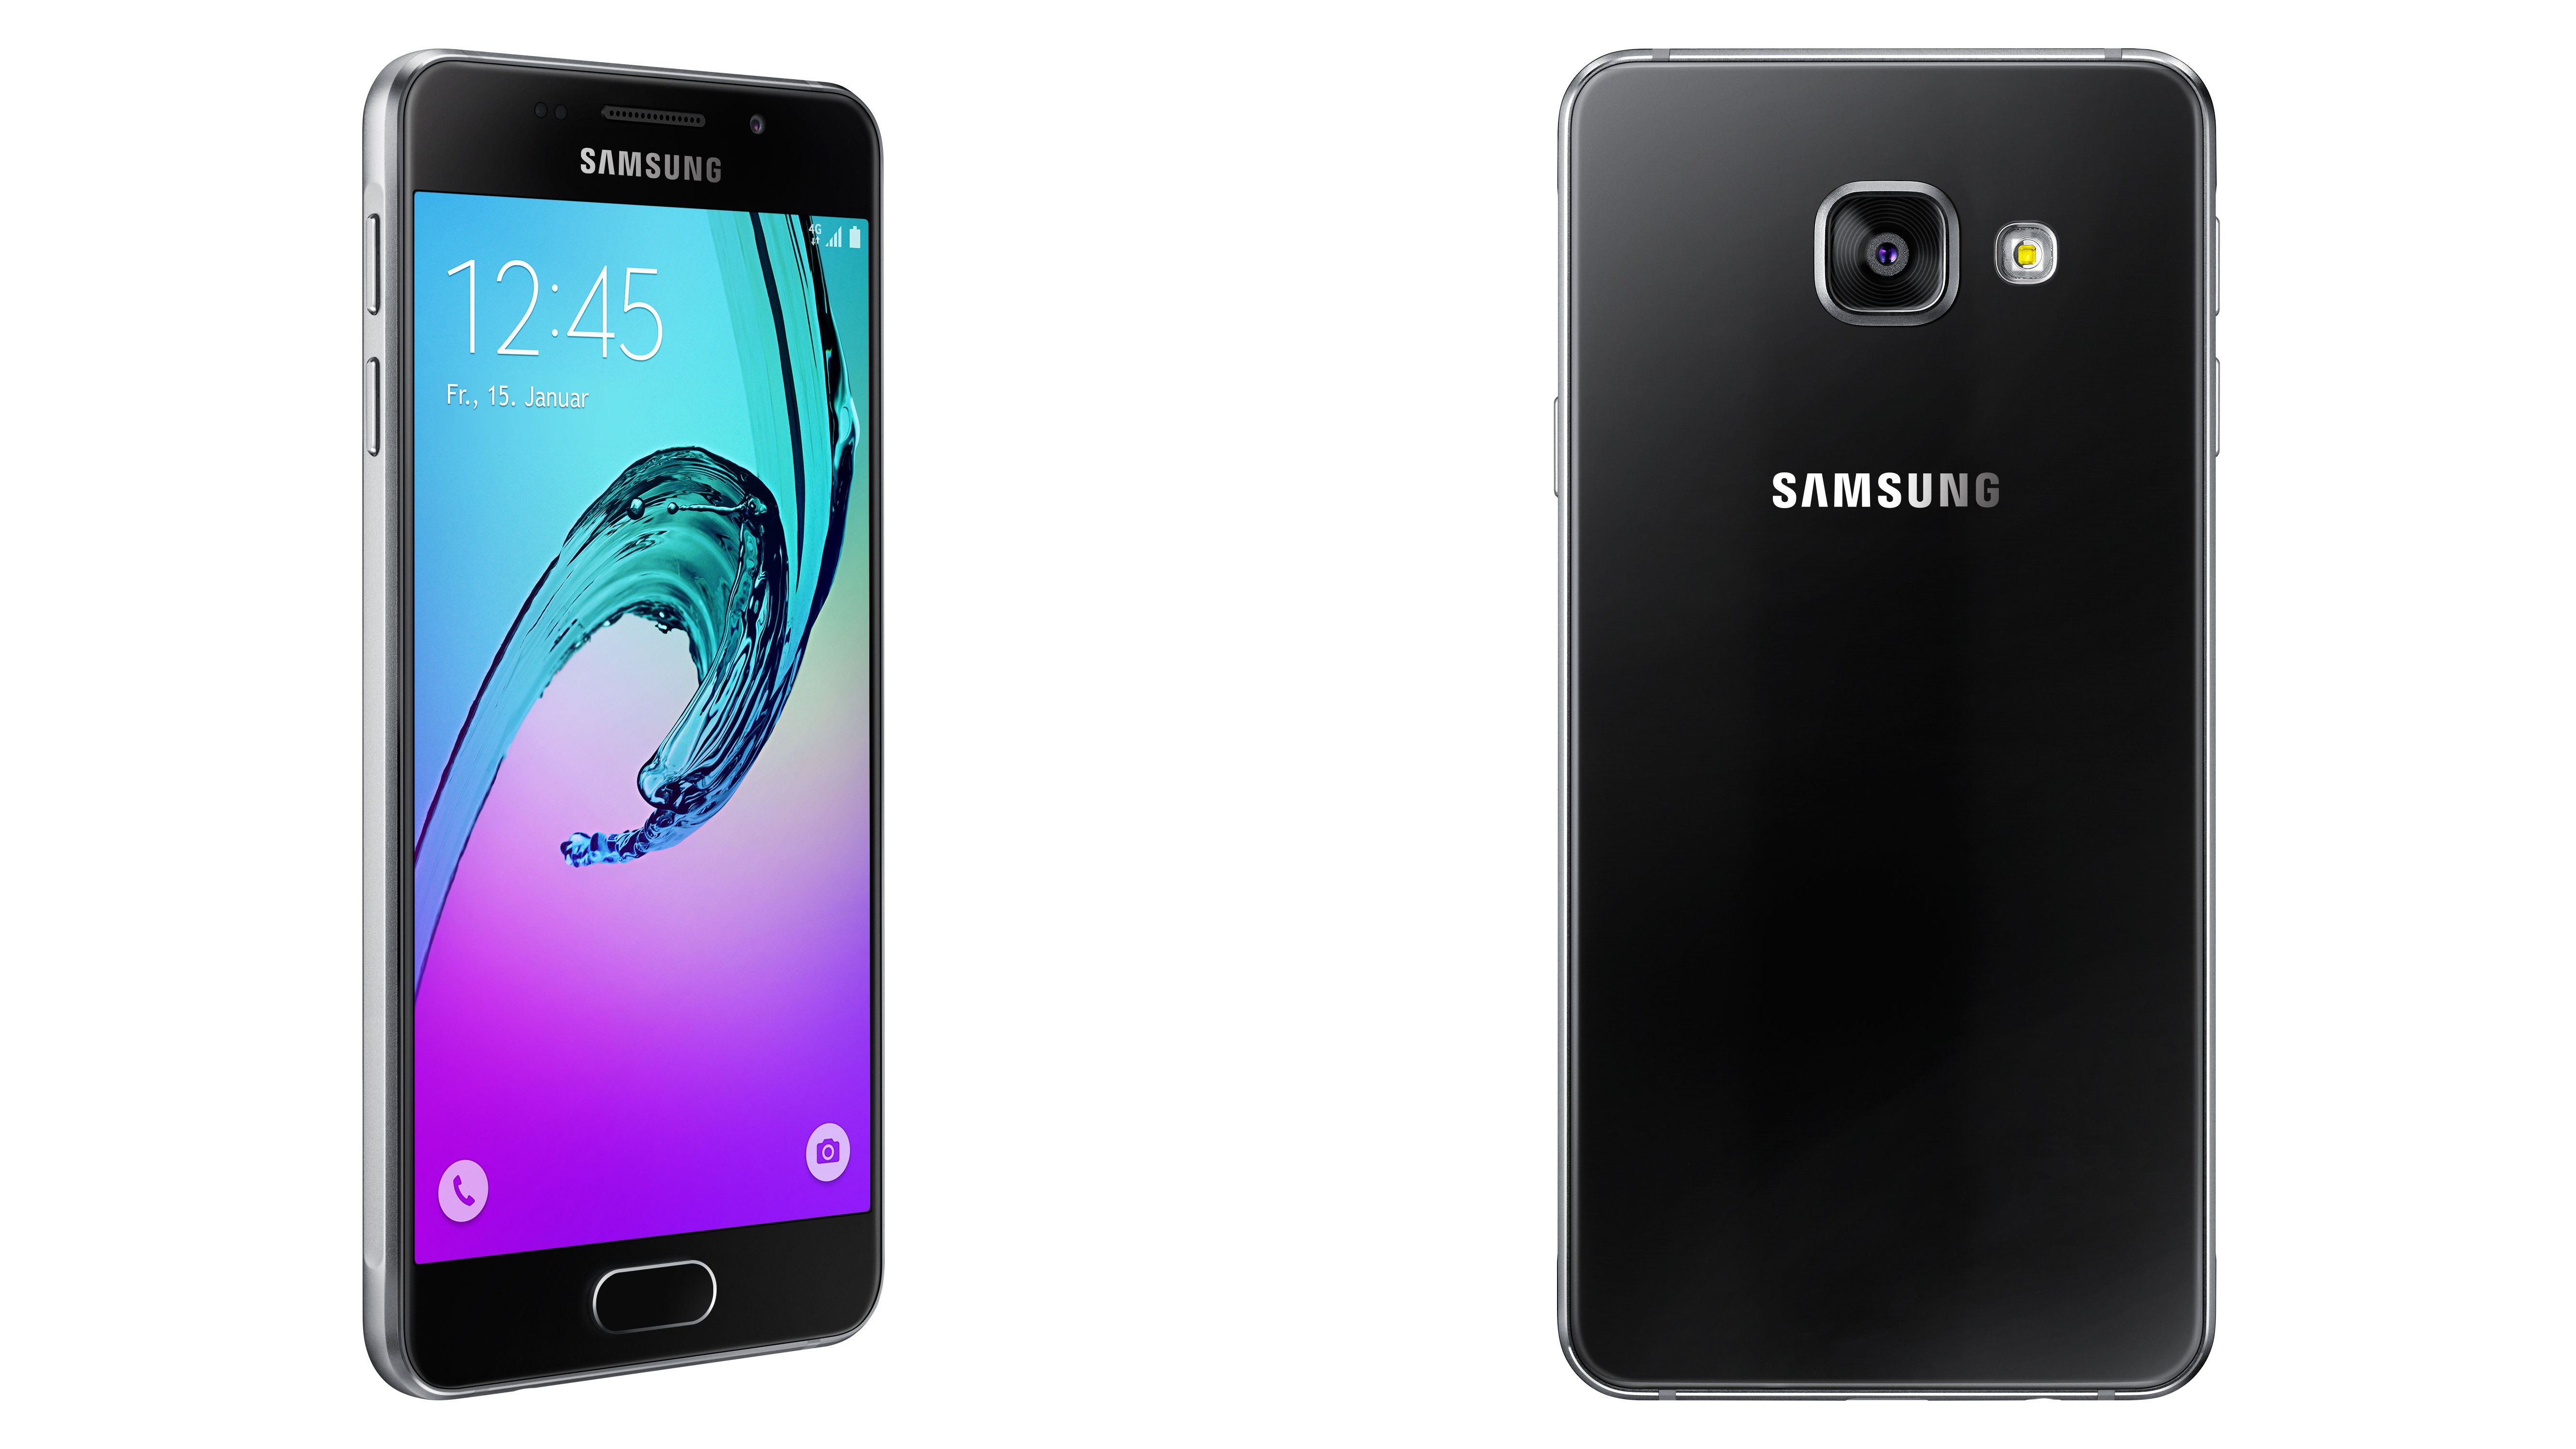 Samsung Galaxy A52 256g